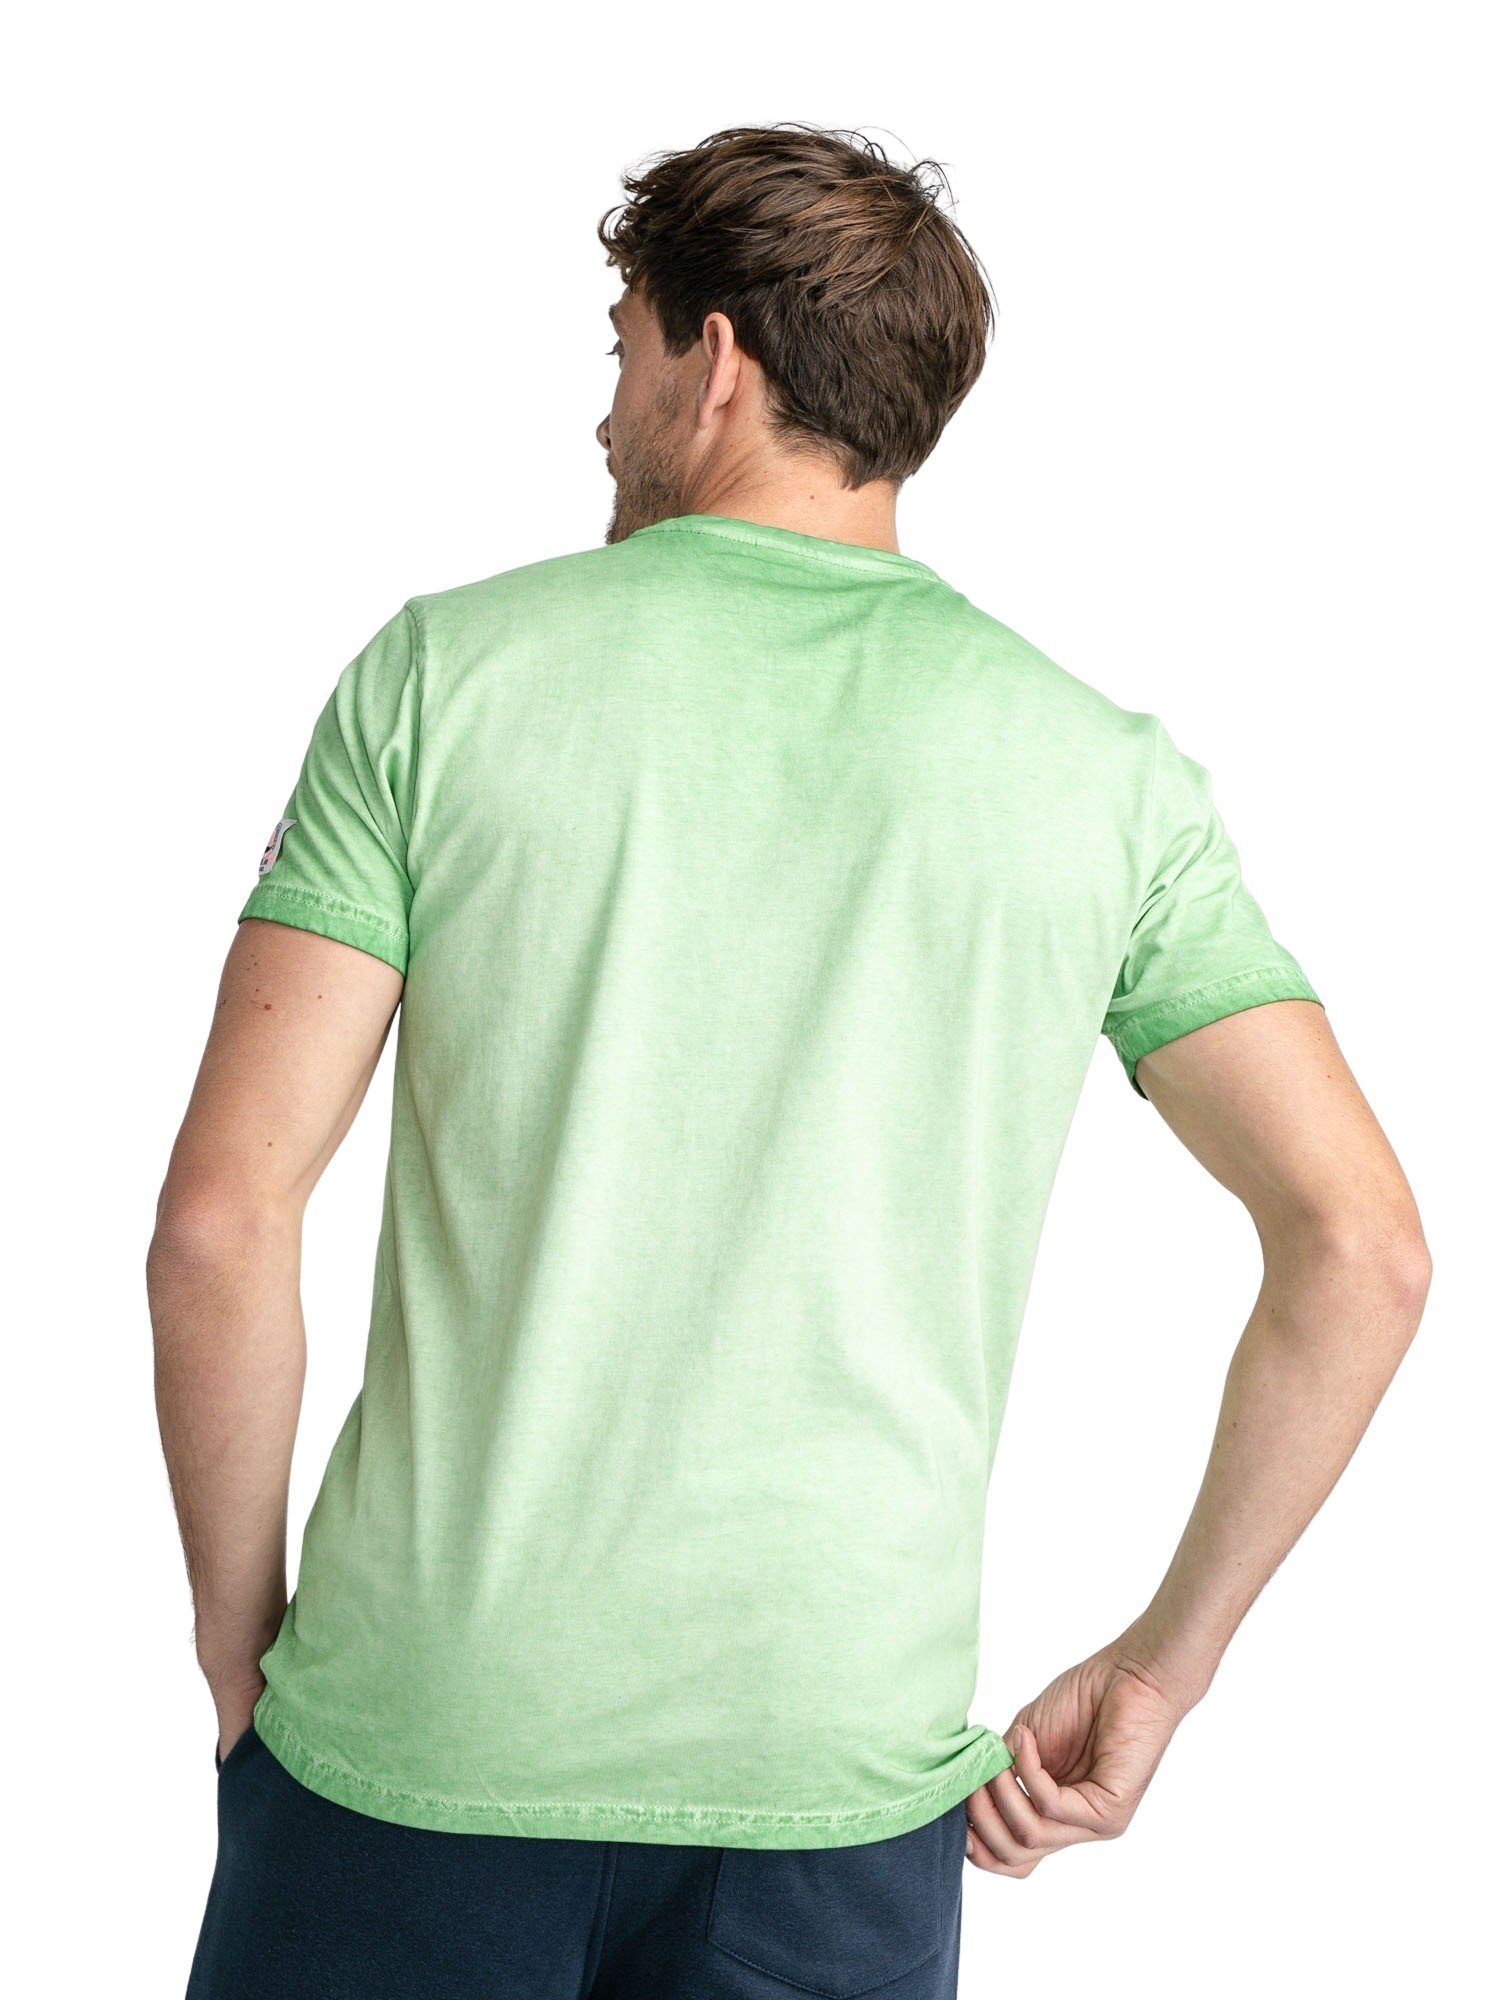 Bestellen Sie Artikel im Ausland! Petrol Industries T-Shirt T-Shirt hellgrün Classic Kurzarmshirt Print